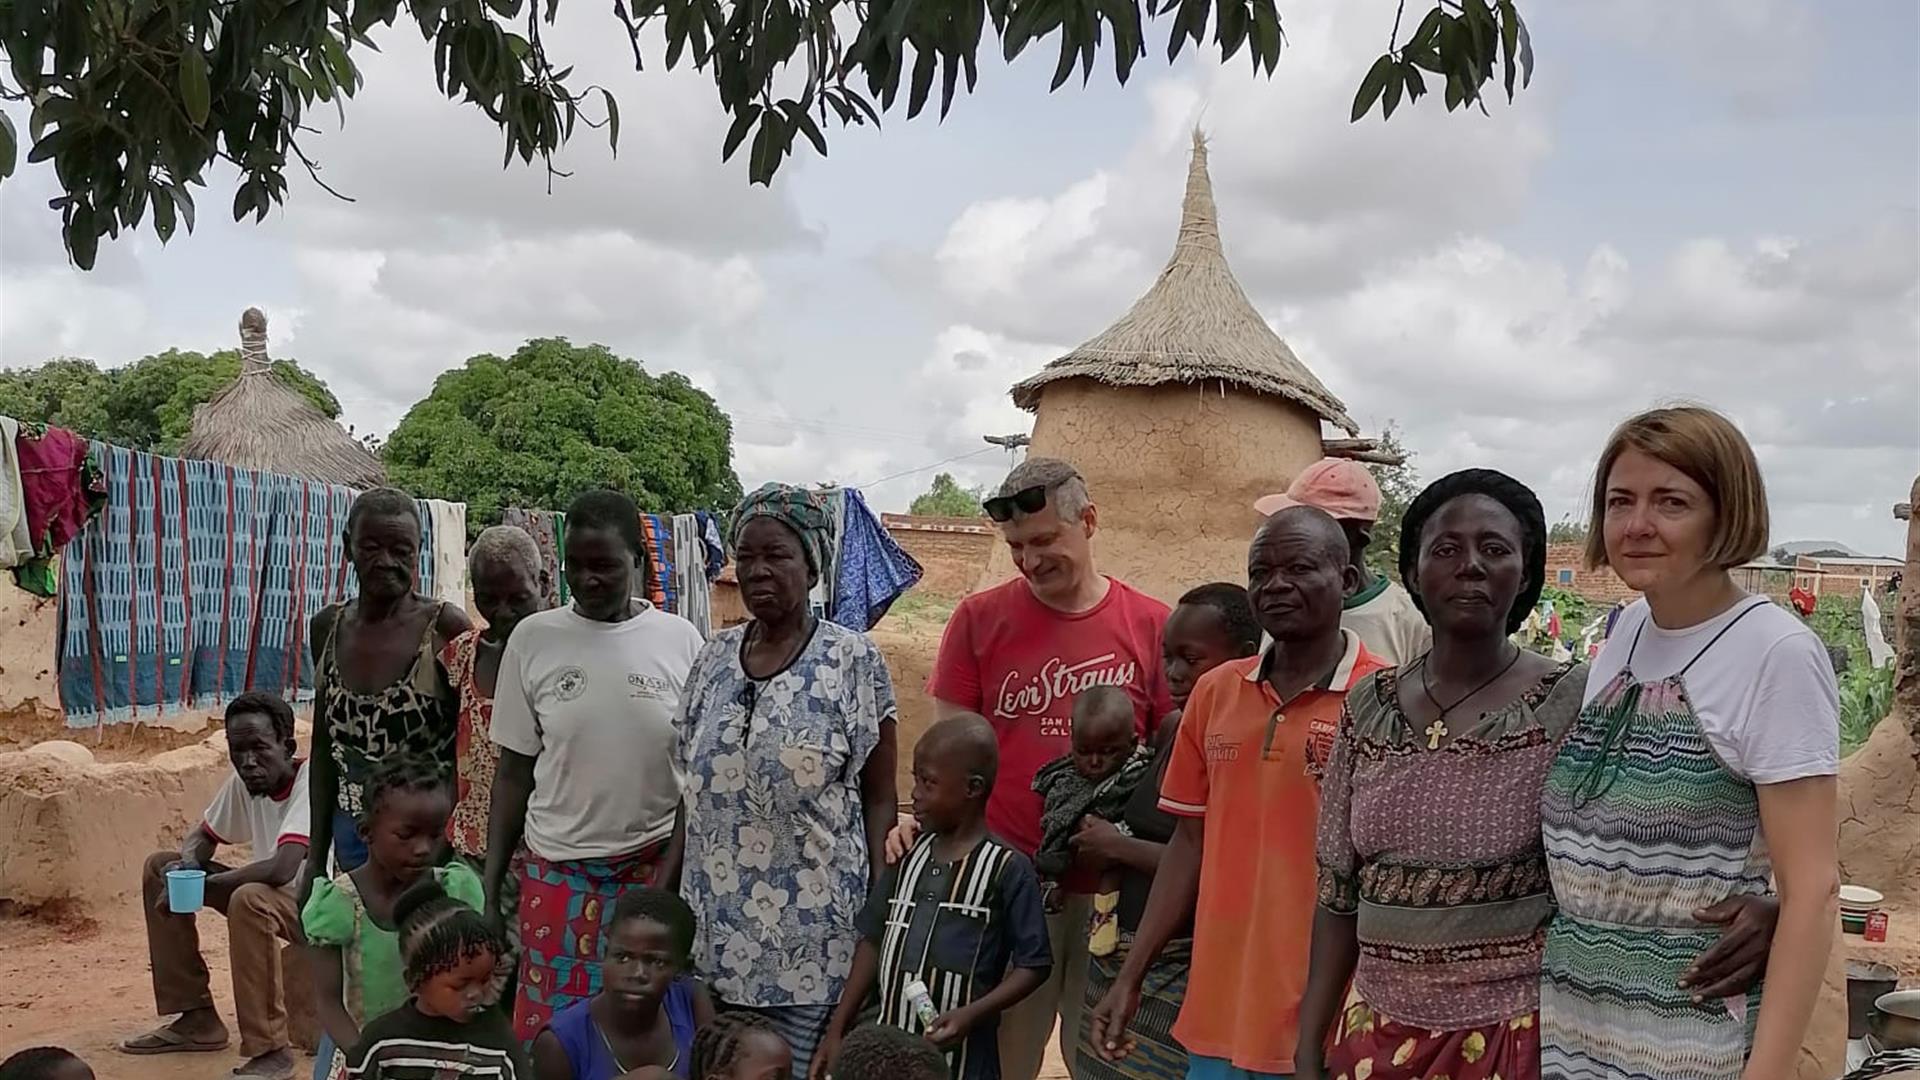 Adozioni Ahmed Edvige E Giorgio Chini In Burkina Faso